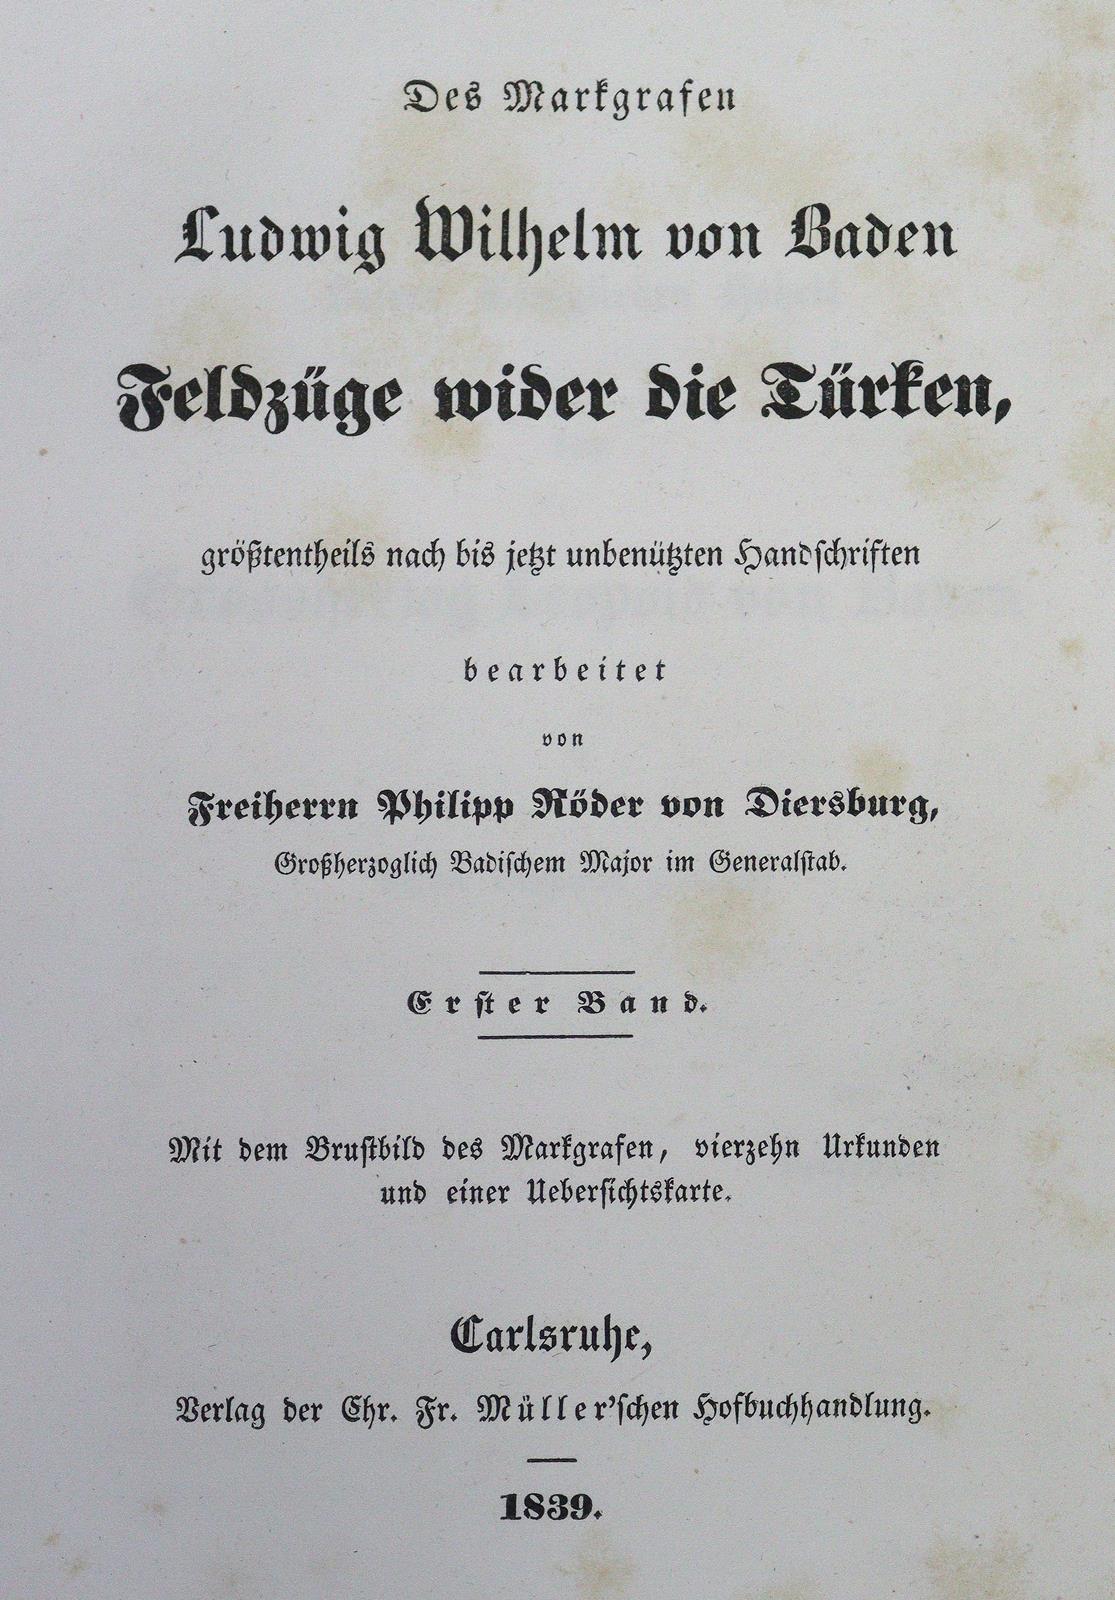 Röder von Diersburg,P. | Bild Nr.2